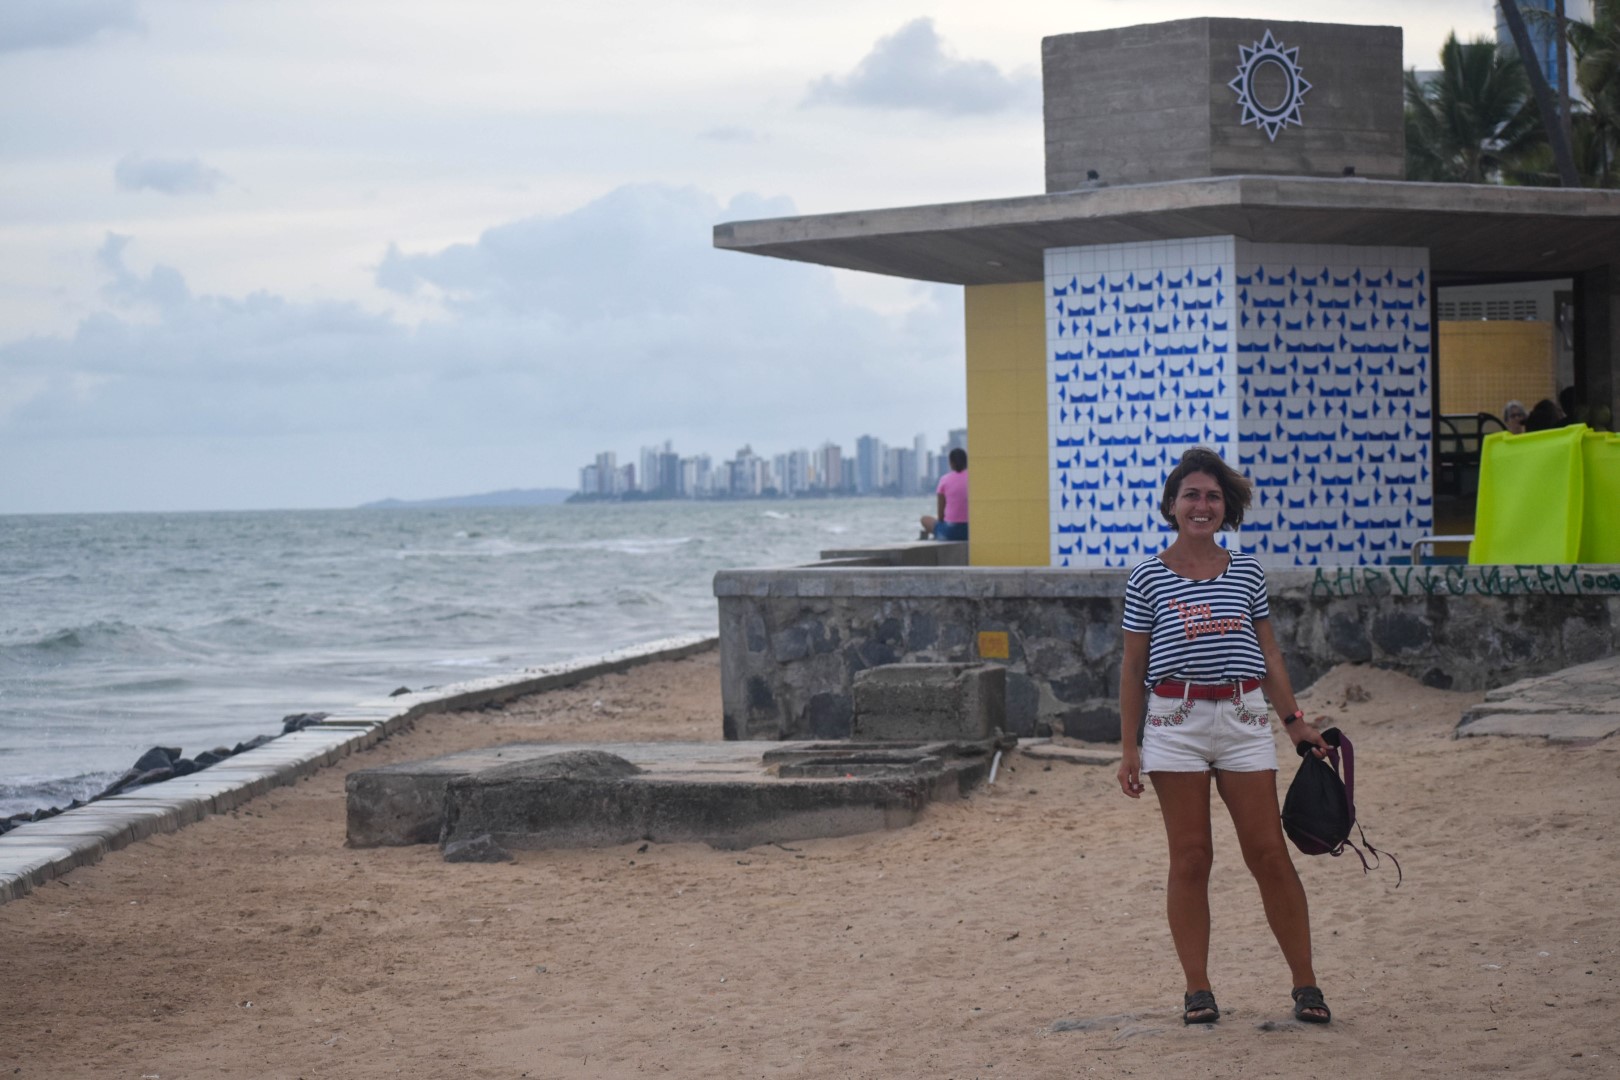 Praia de Boa Viagem, Boa Viagem, Recife - State of Pernambuco